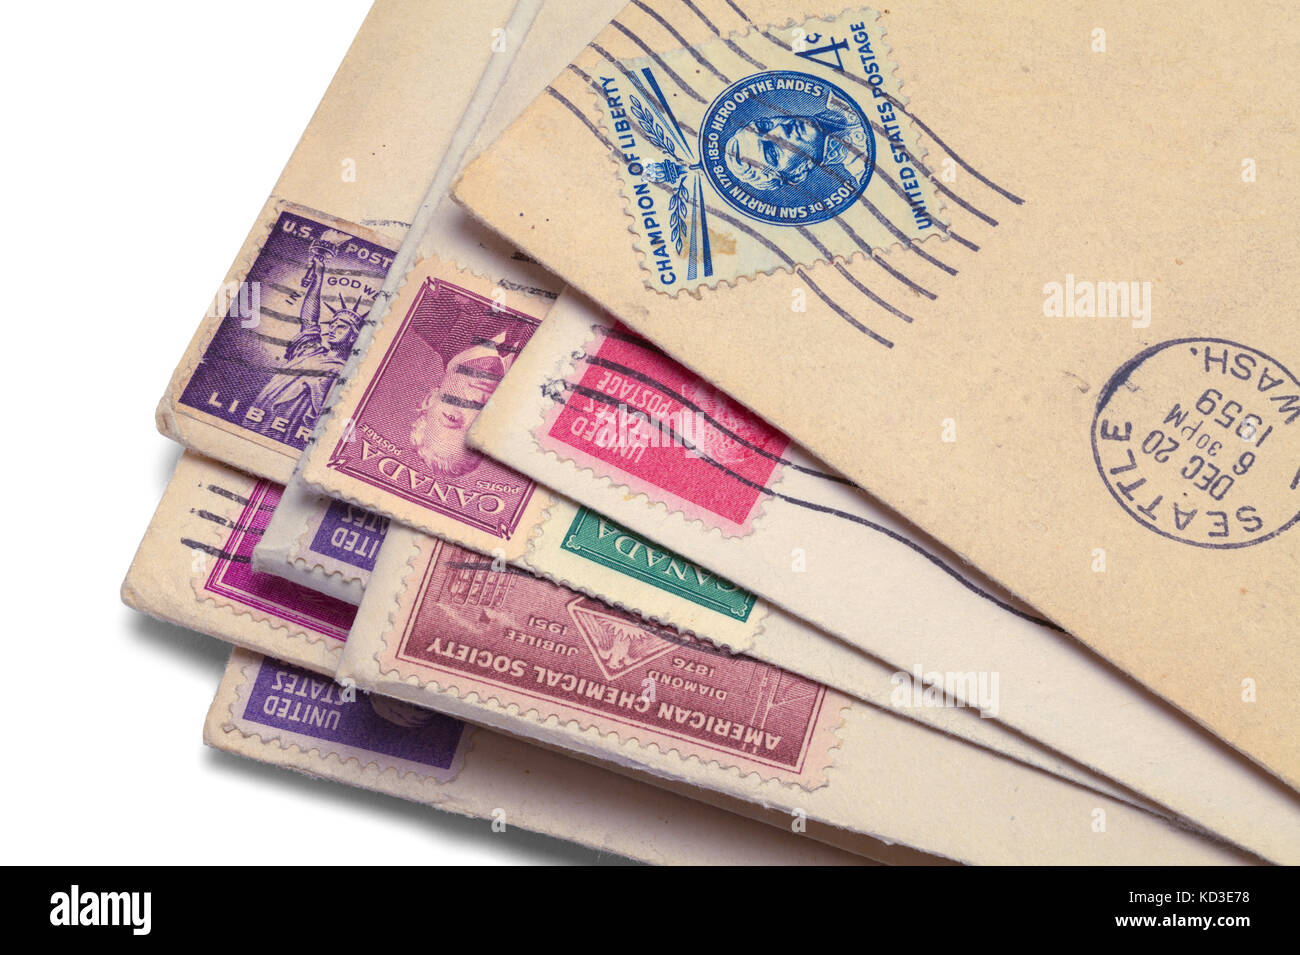 Nahaufnahme der vintage Briefe mit Briefmarken auf einem weißen Hintergrund. Stockfoto